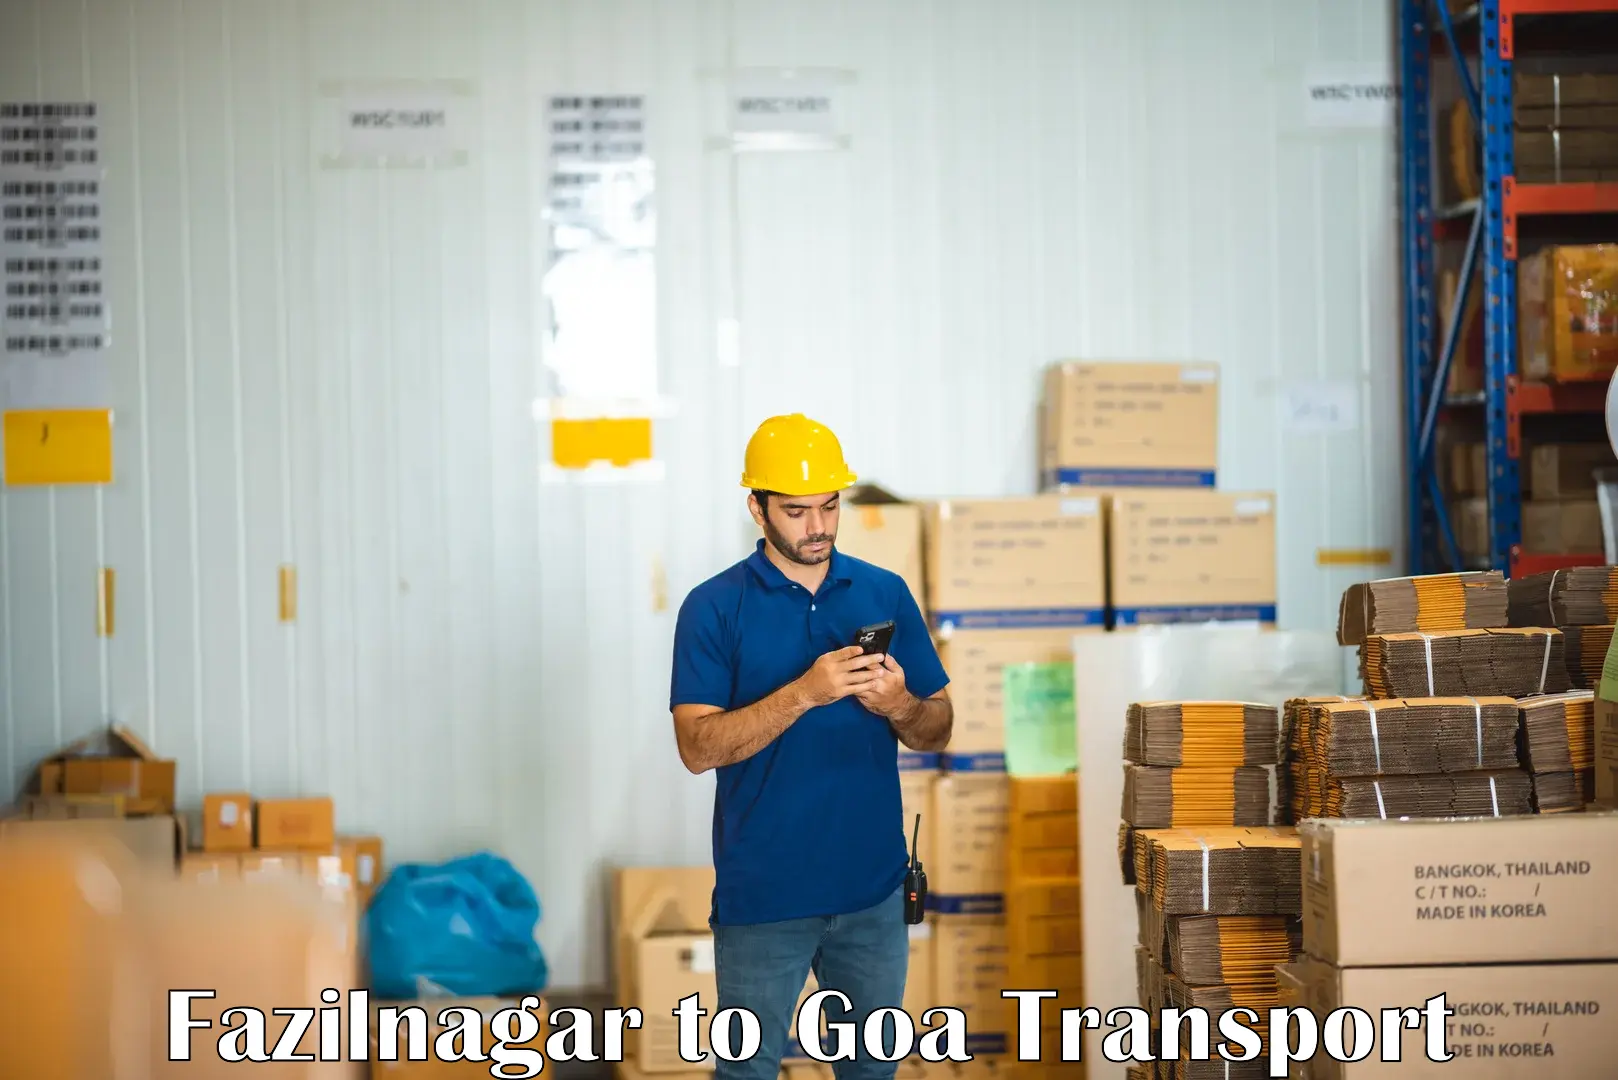 Air cargo transport services Fazilnagar to Goa